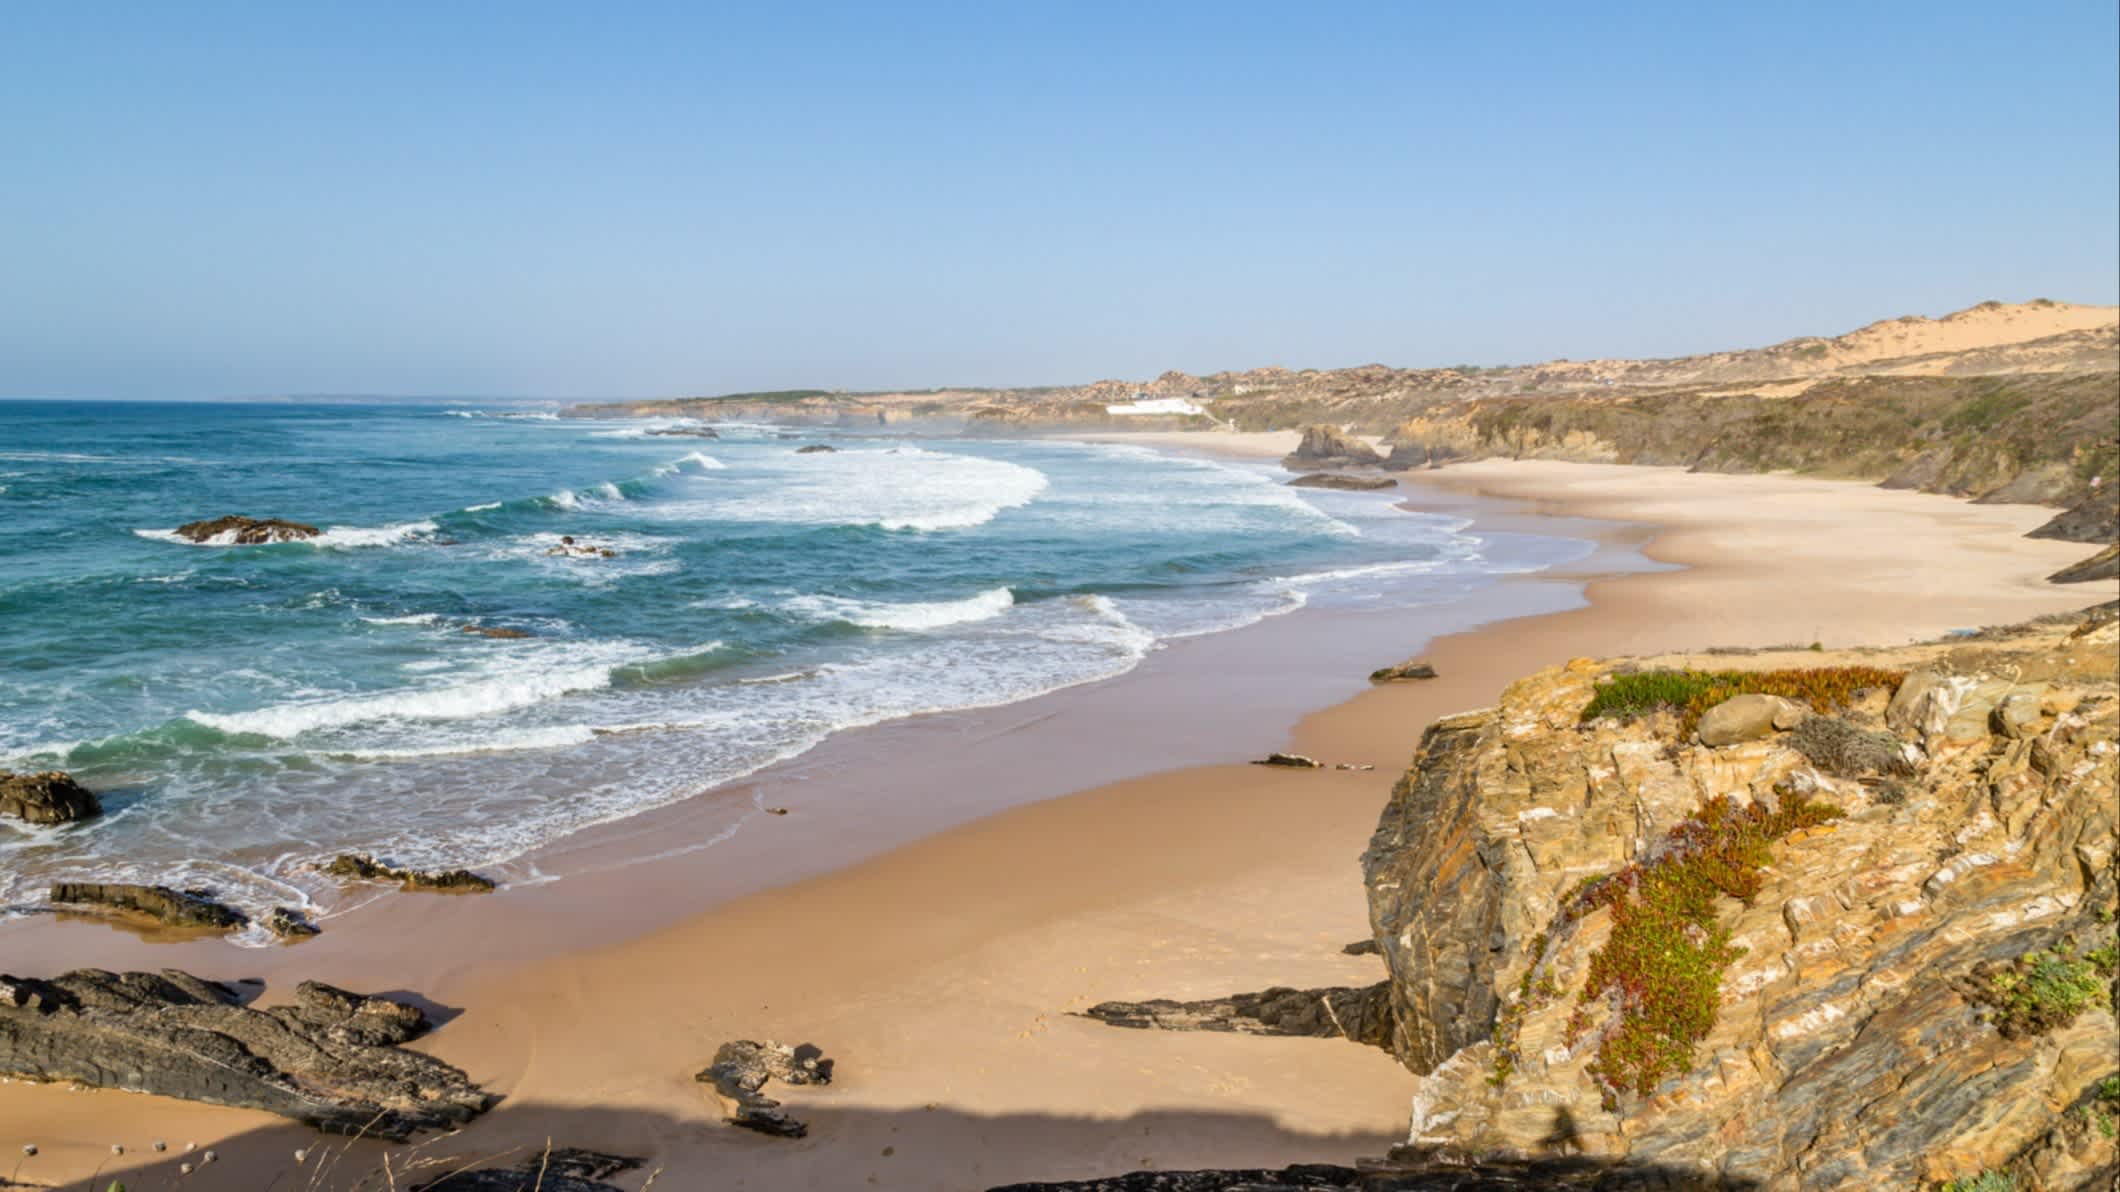 Der Strand Praia do Almograve, Alentejo, Portugal in der Bucht am Meer mit Felsen im Bild und bei herrlicher Sonne und Wellen im Wasser.